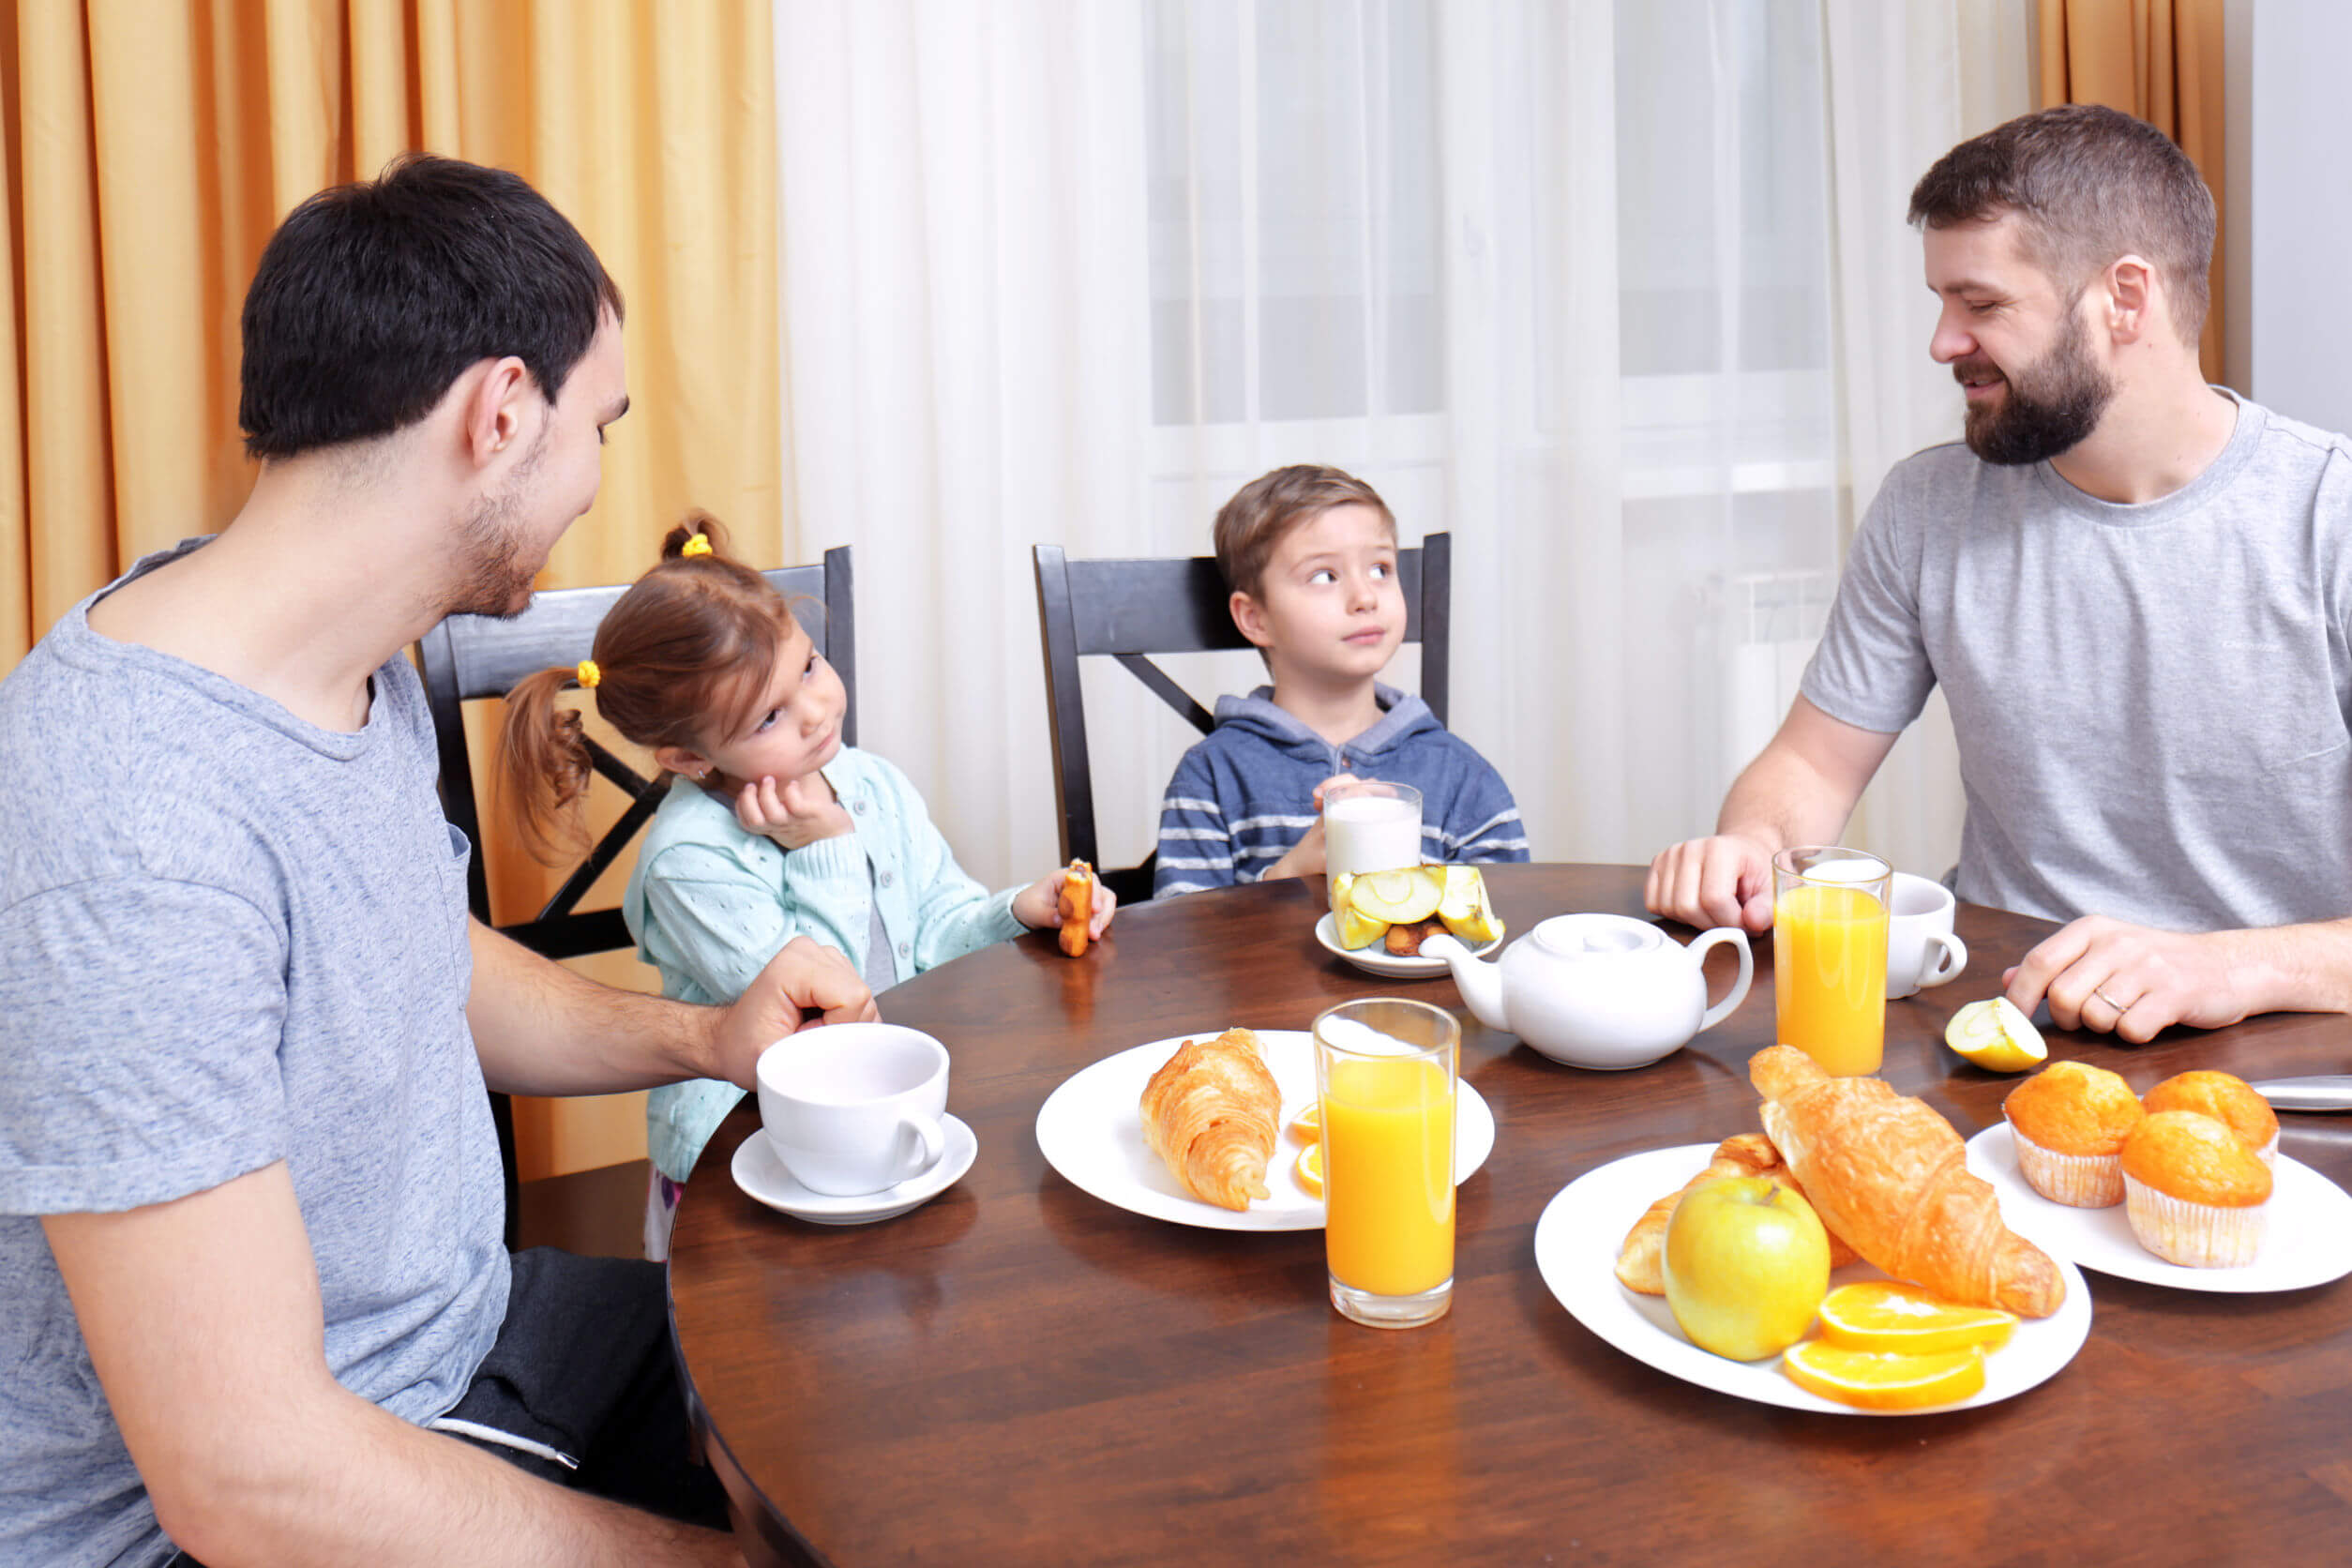 Familia desayunando y poniendo en práctica la atención plena.